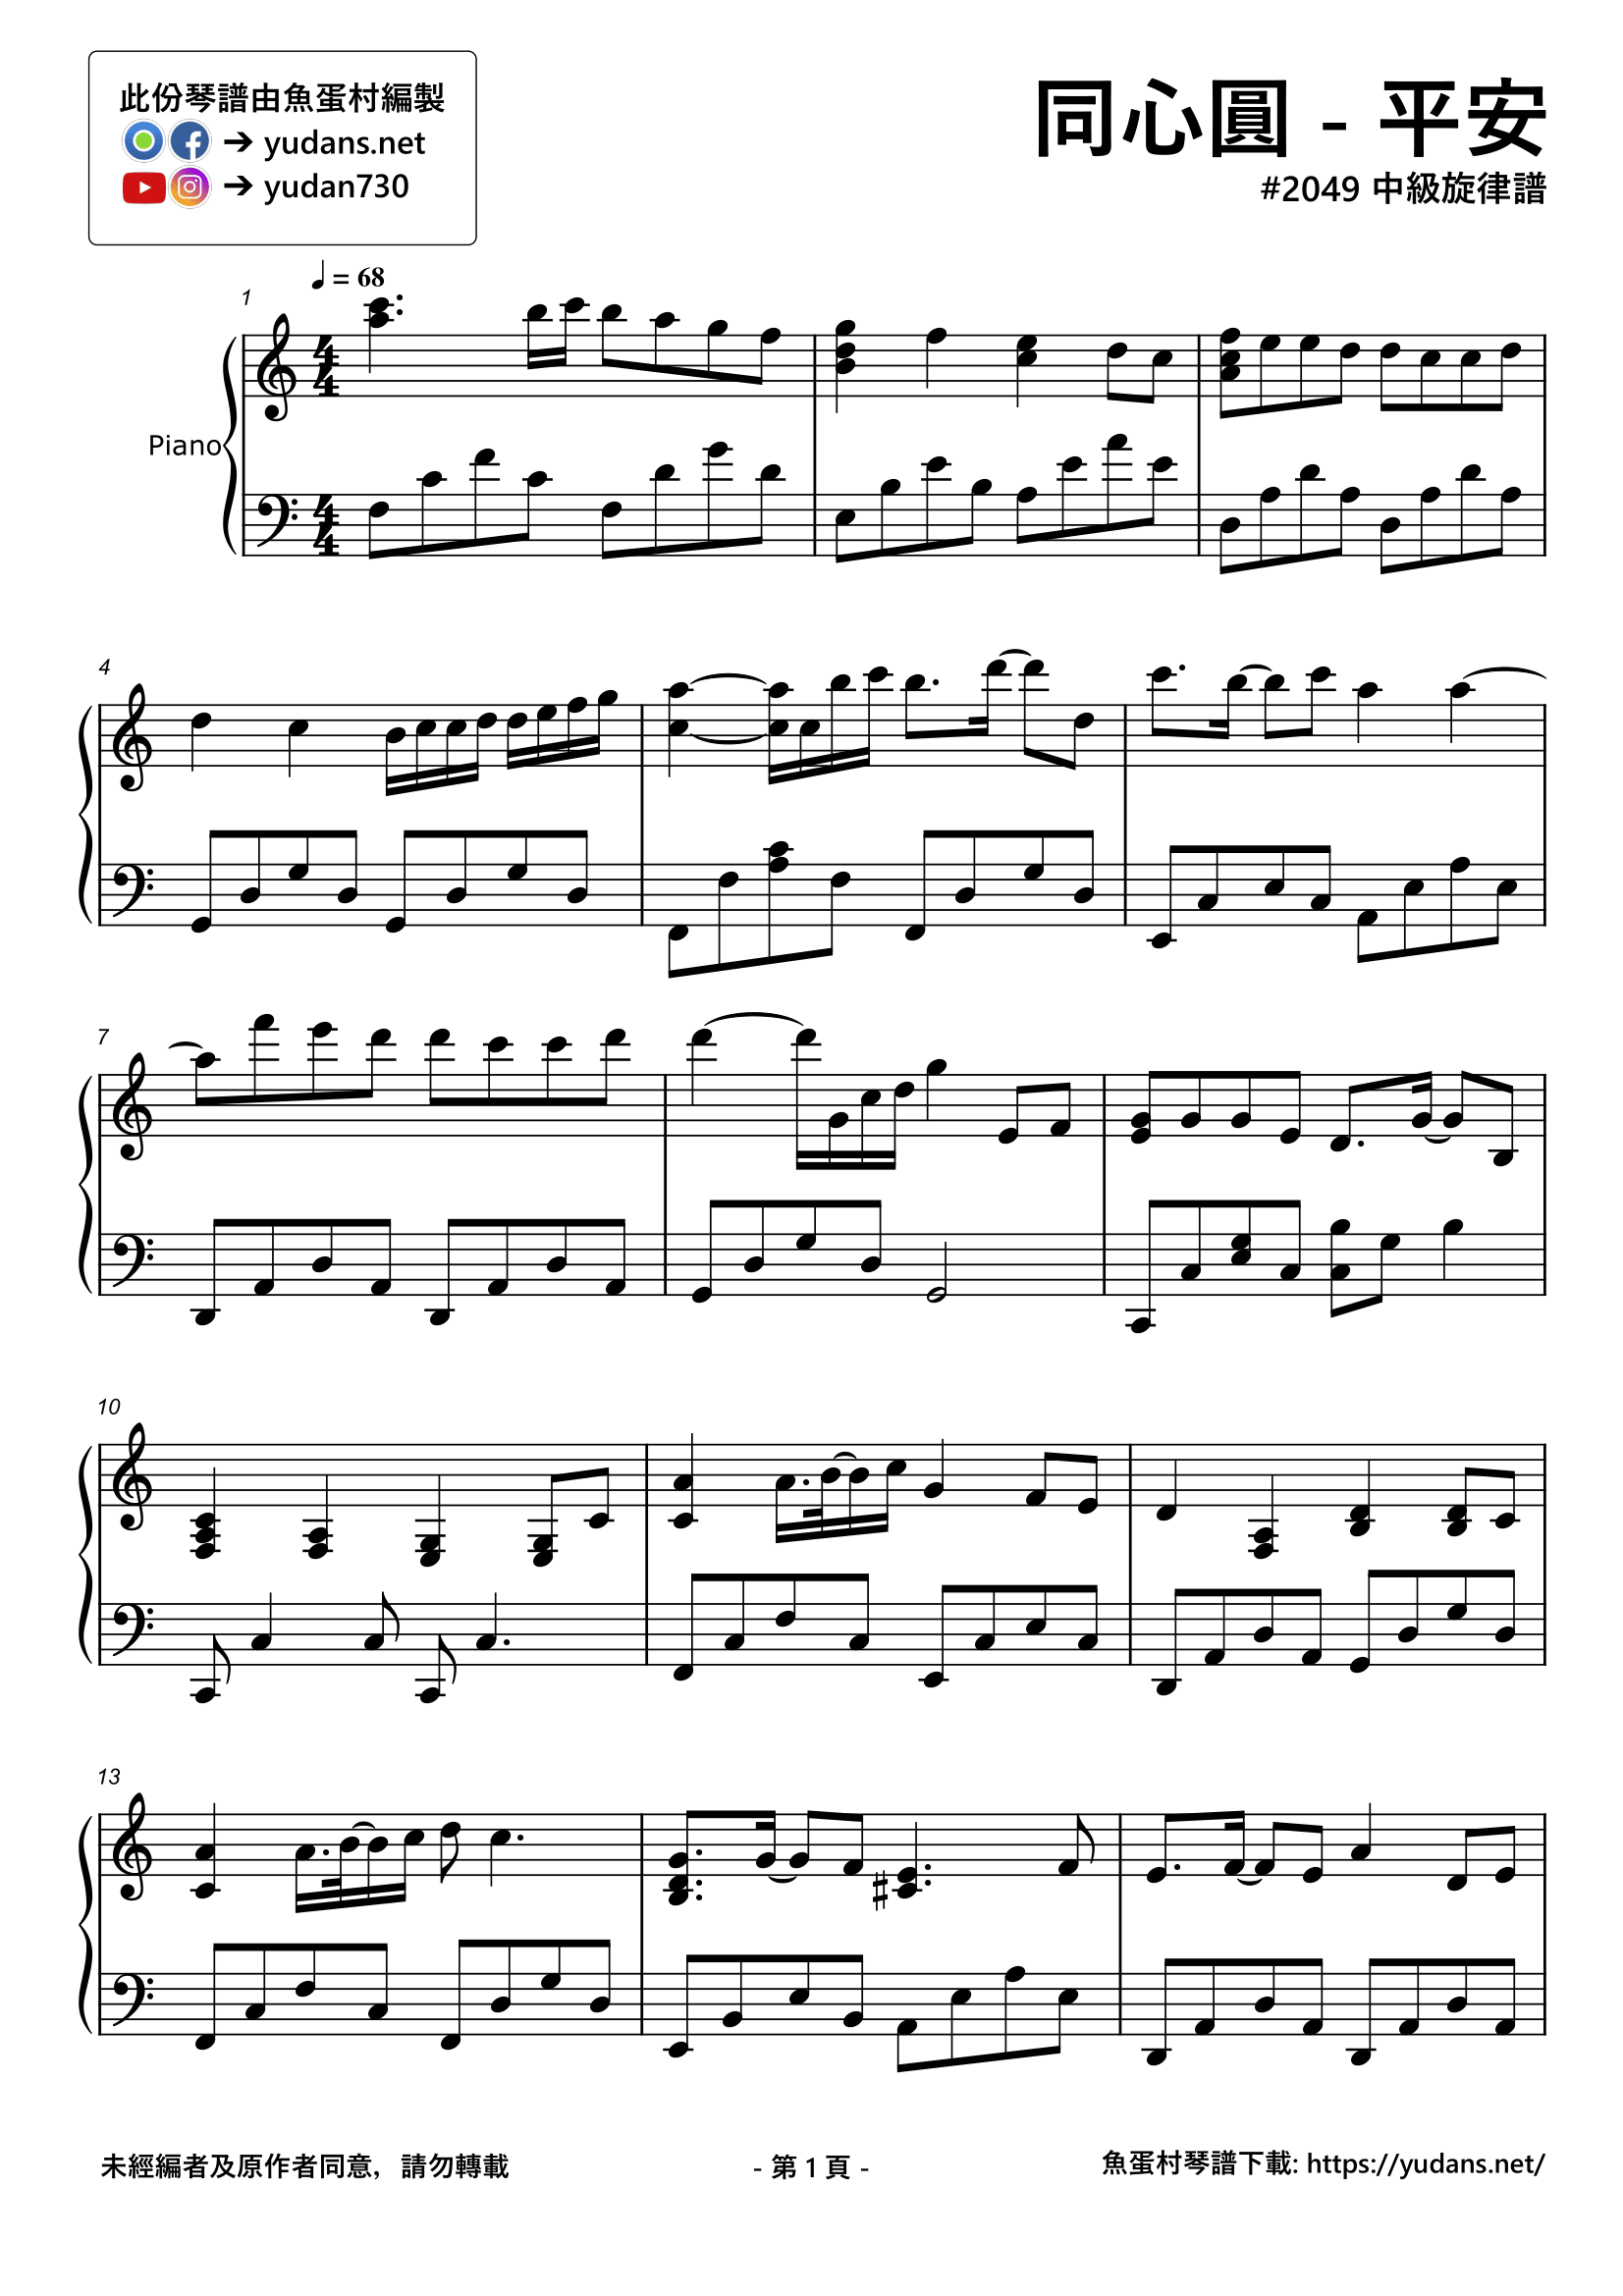 平安 琴譜 第1頁